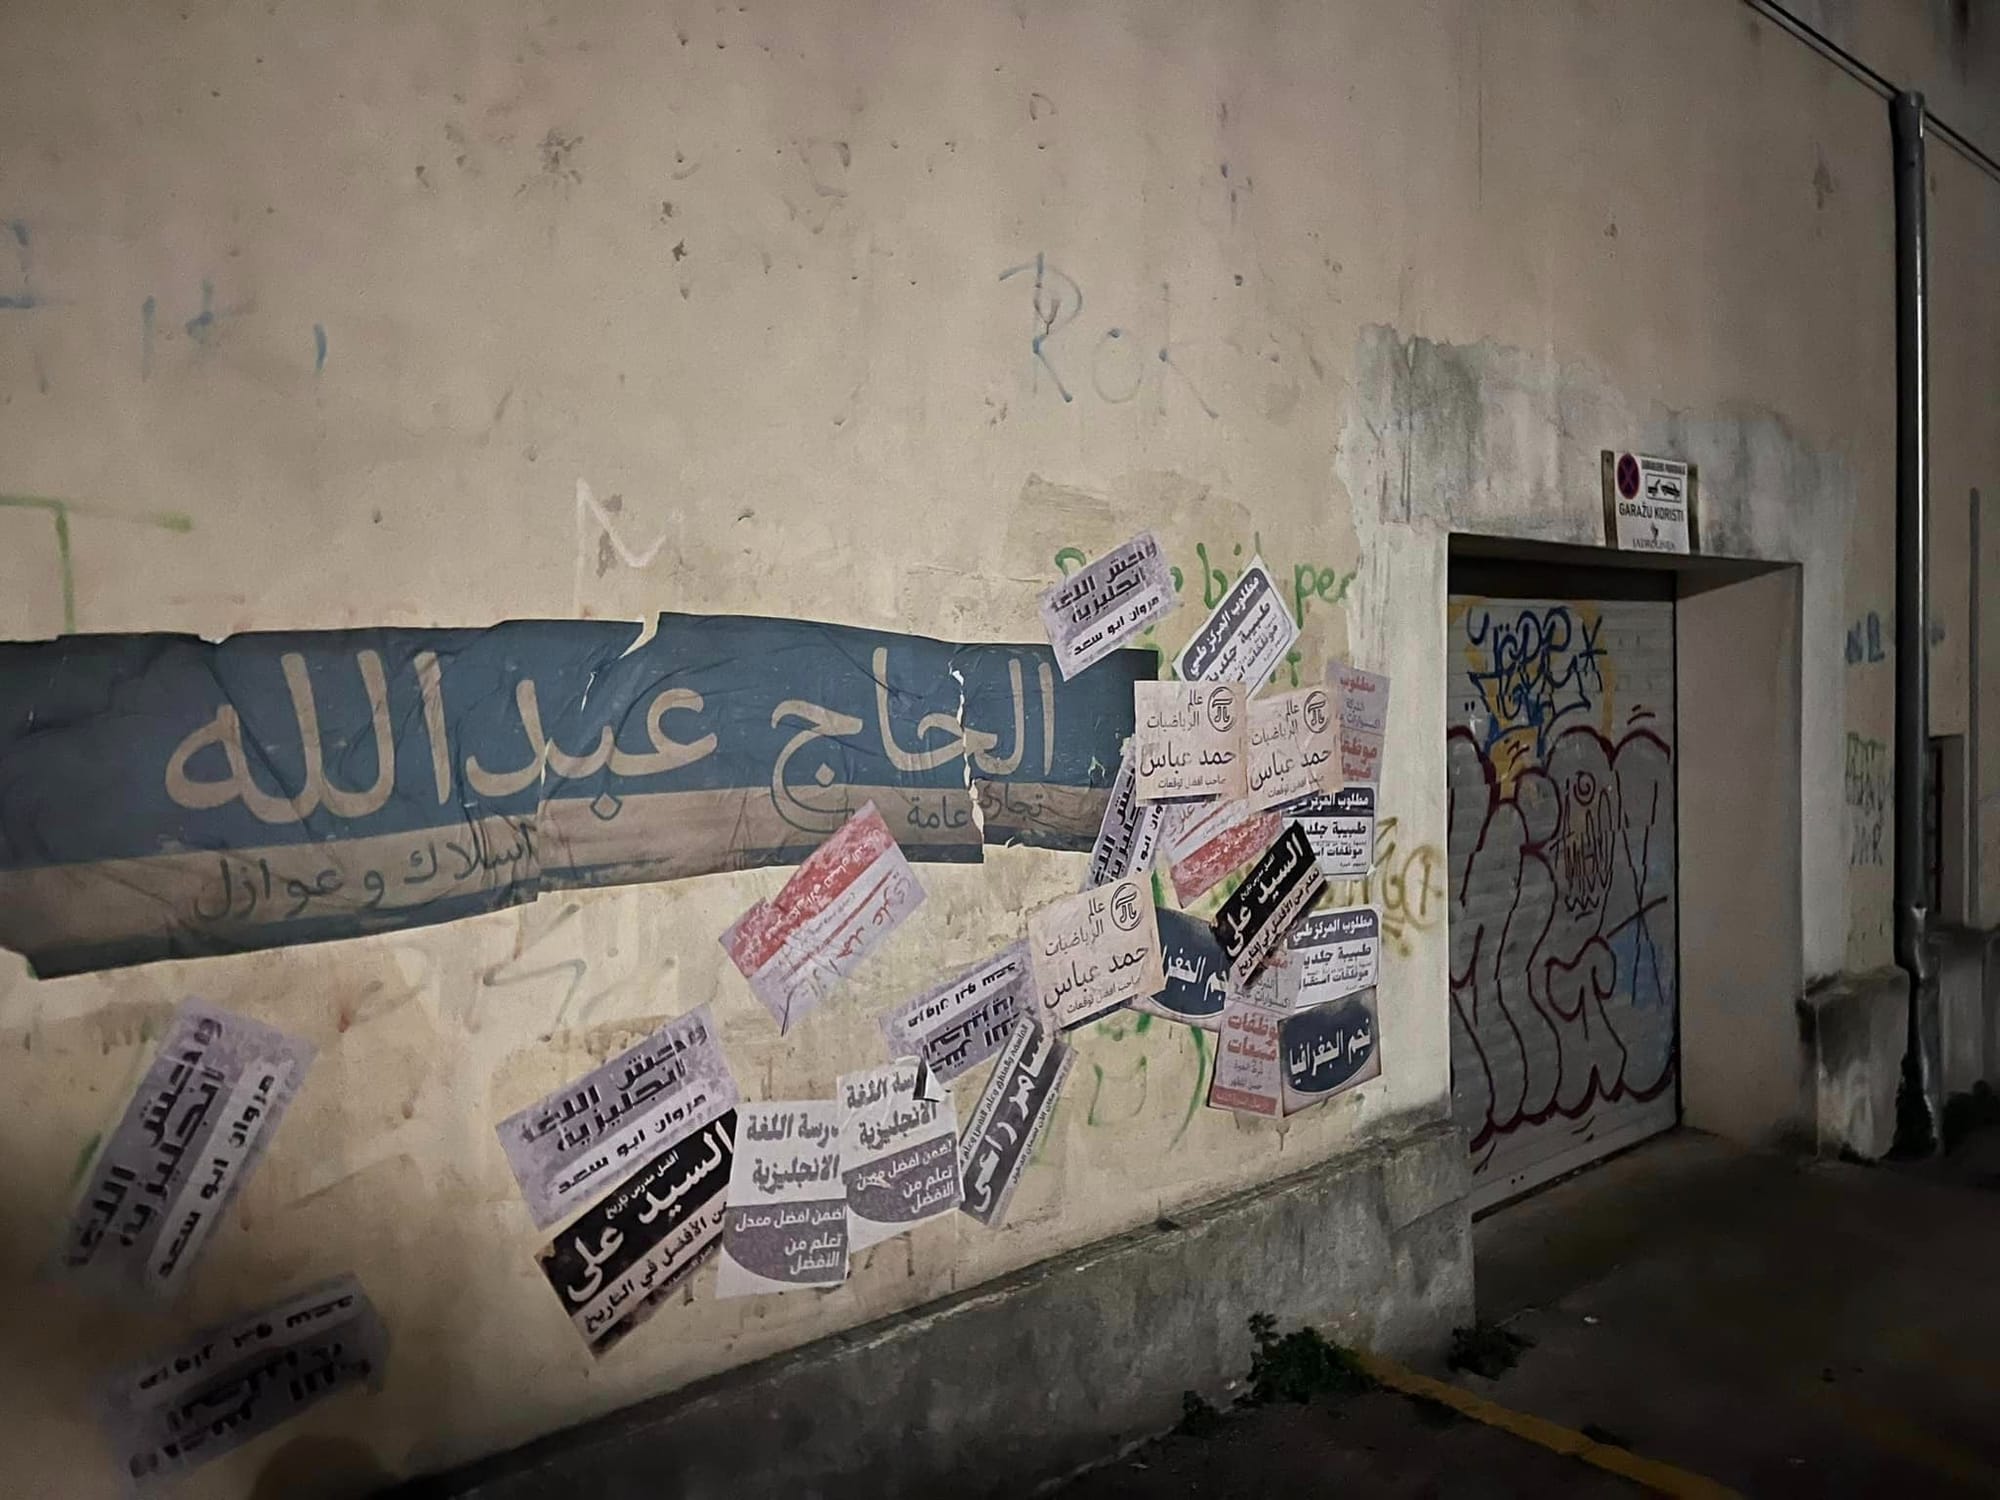 Zadrane šokirali natpisi po fasadama na arapskom: "Grad 'glumi' Mosul"